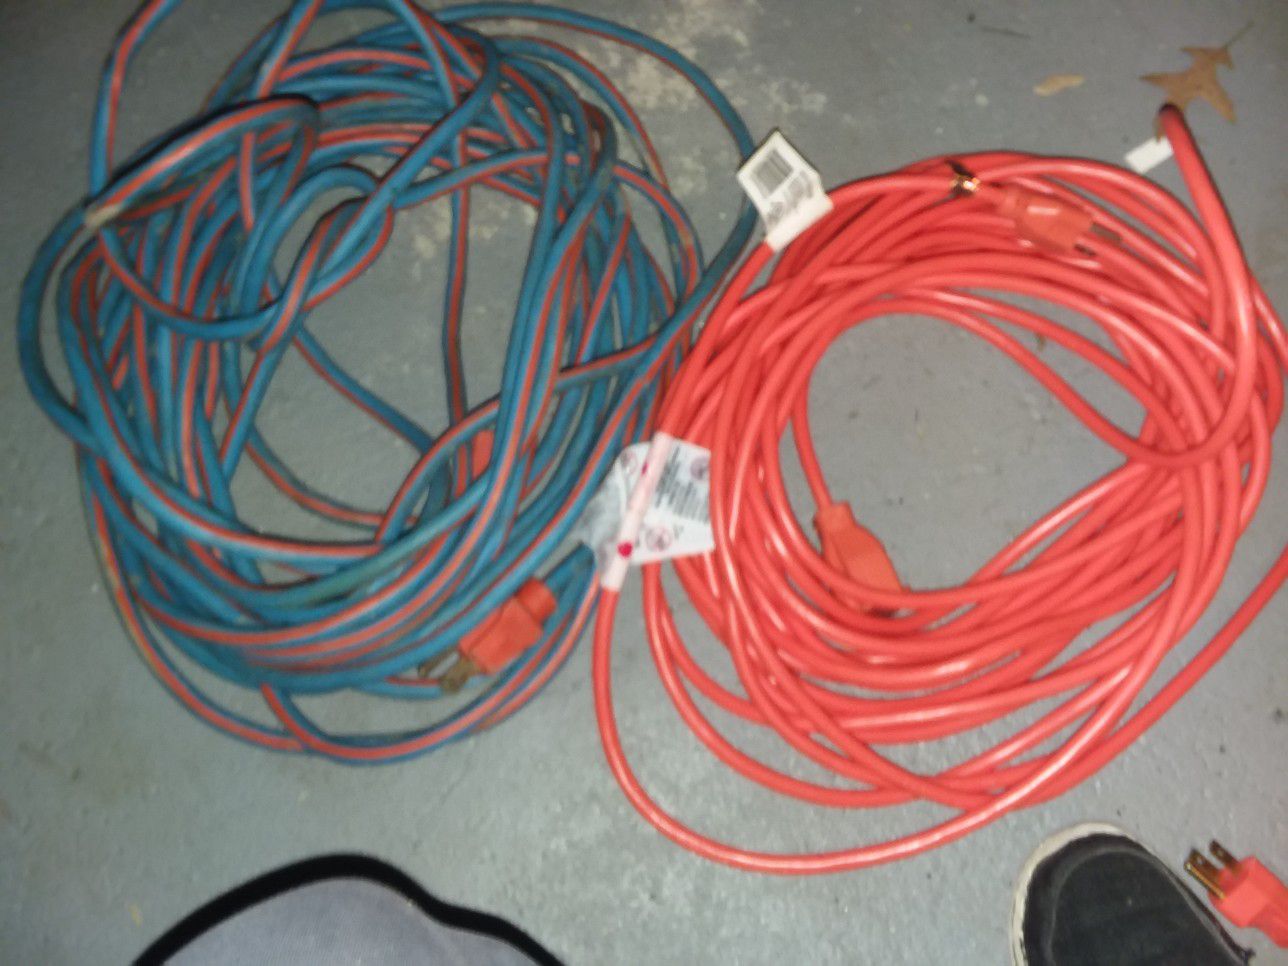 50 ft I door/outdoor extension cords